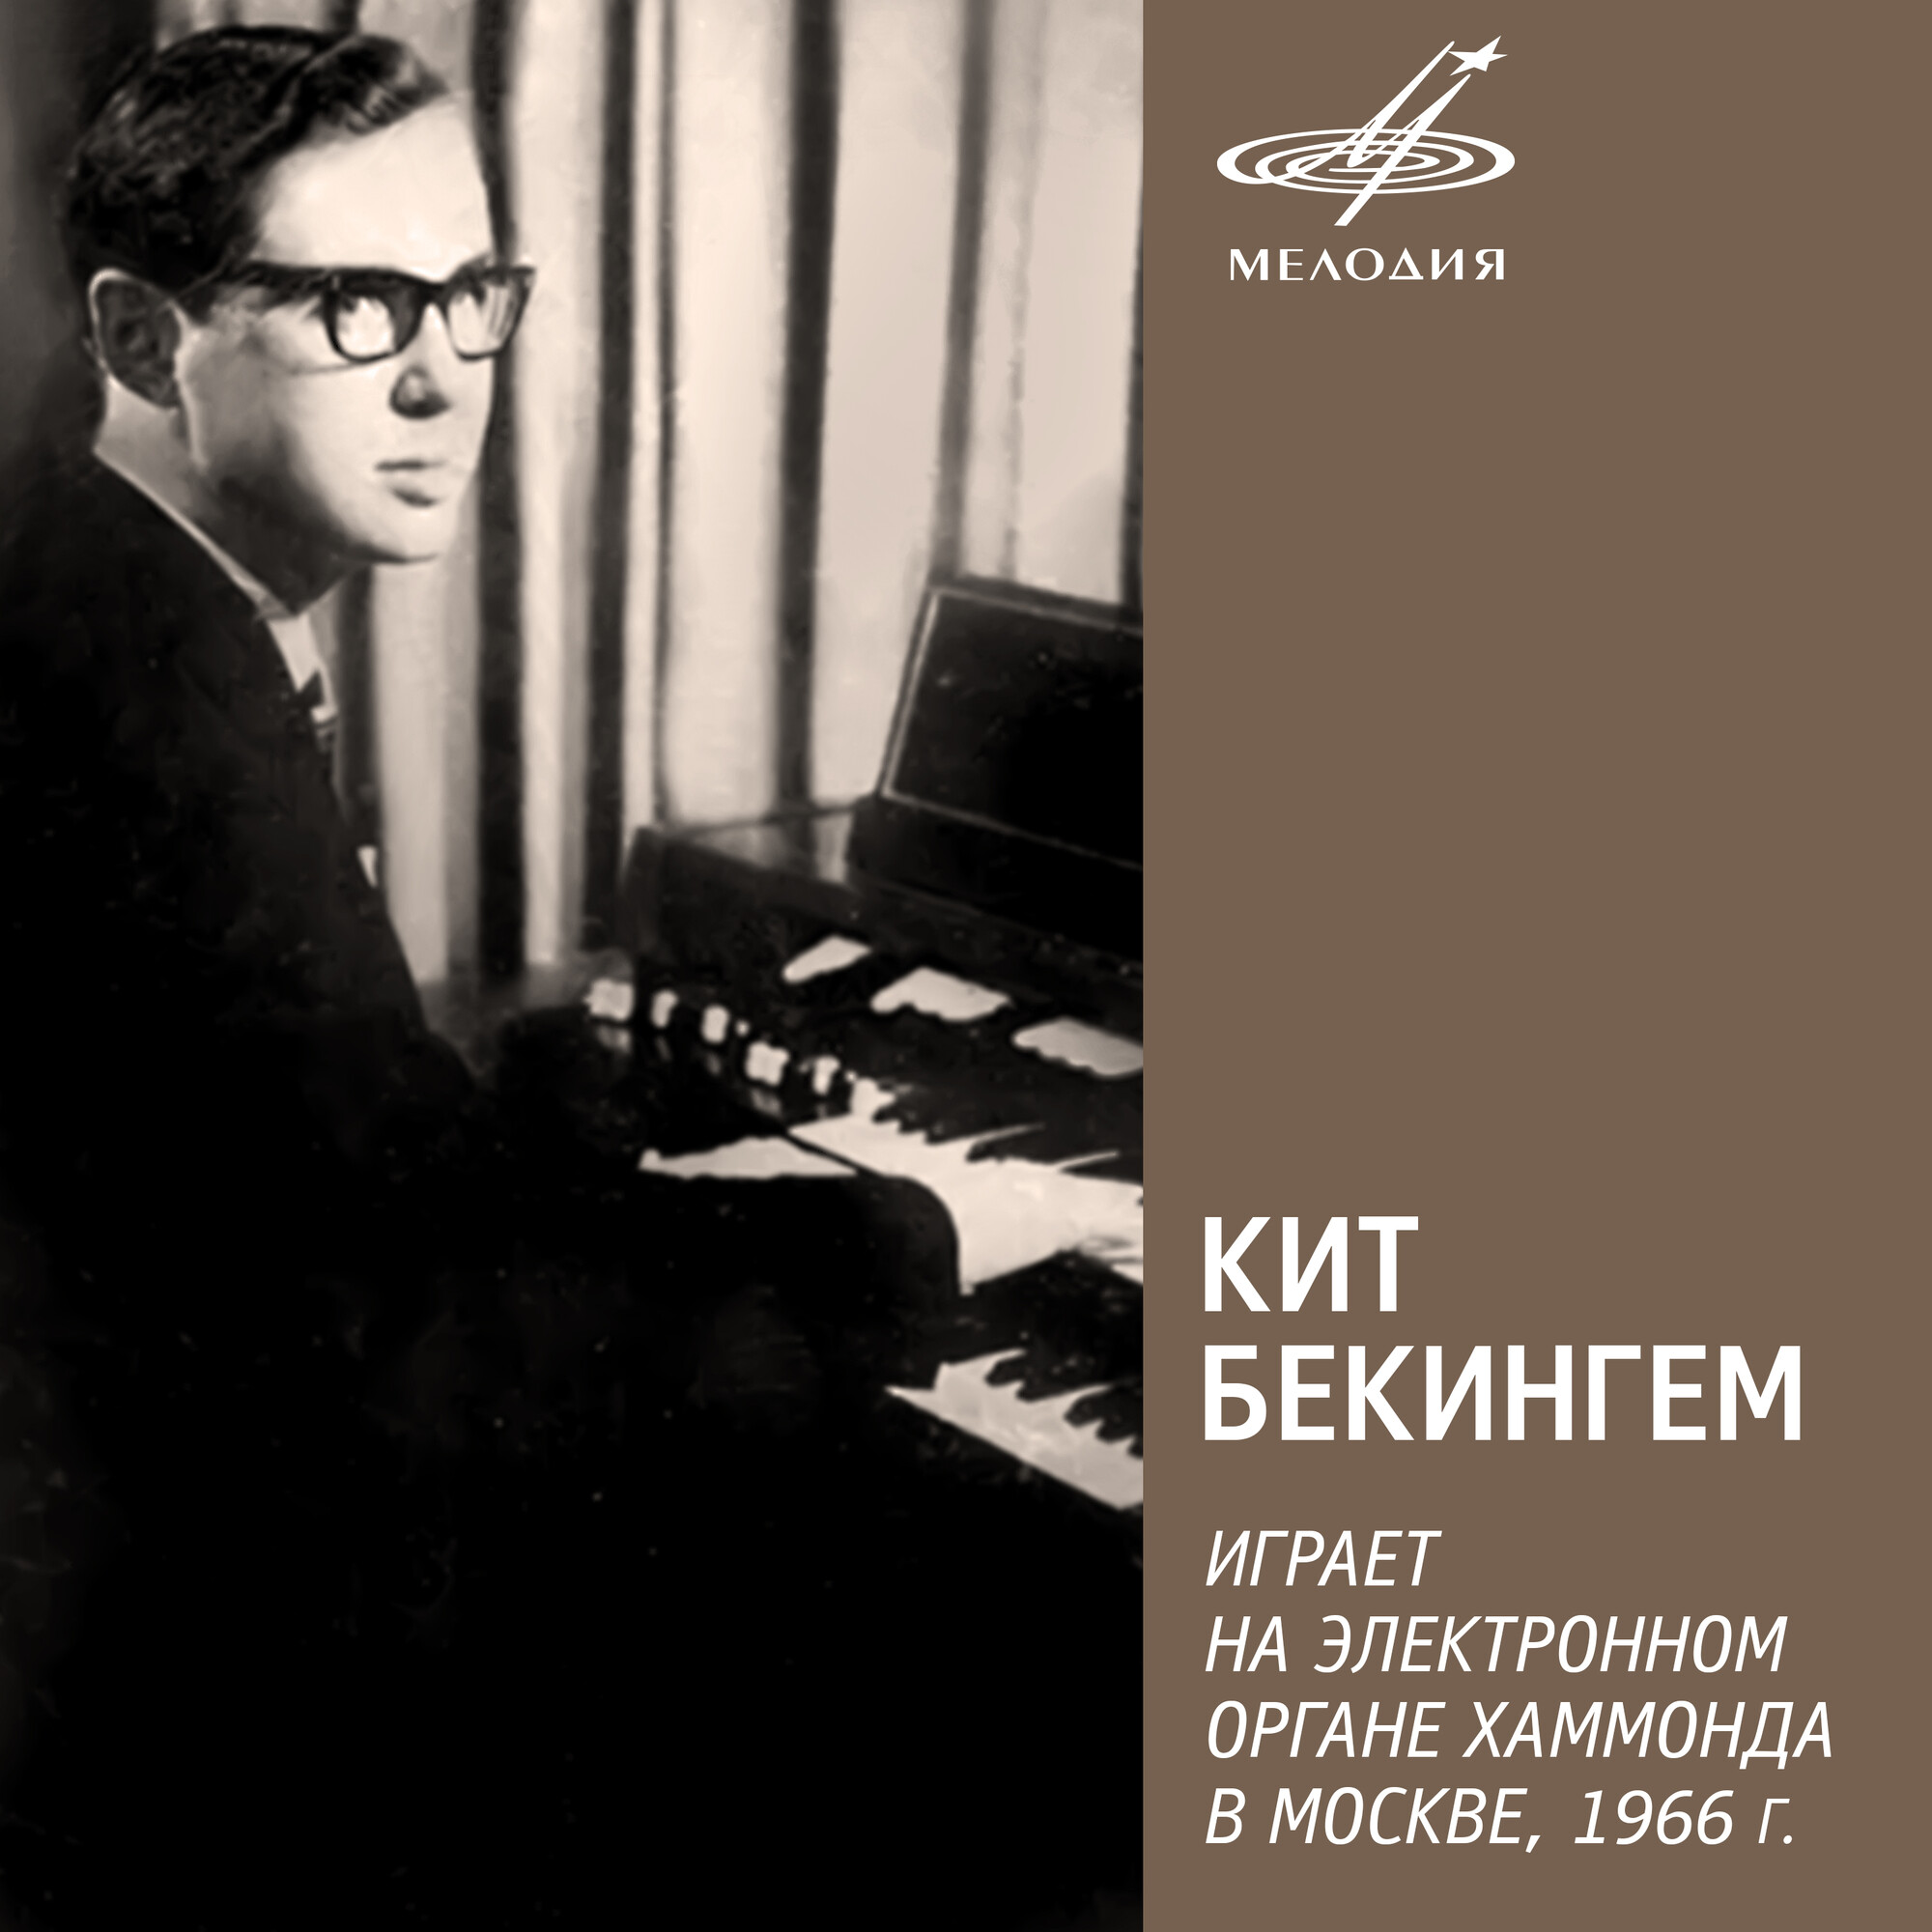 Кит Бекингем играет на электронном органе Хаммонда в Москве, 1966 - EP